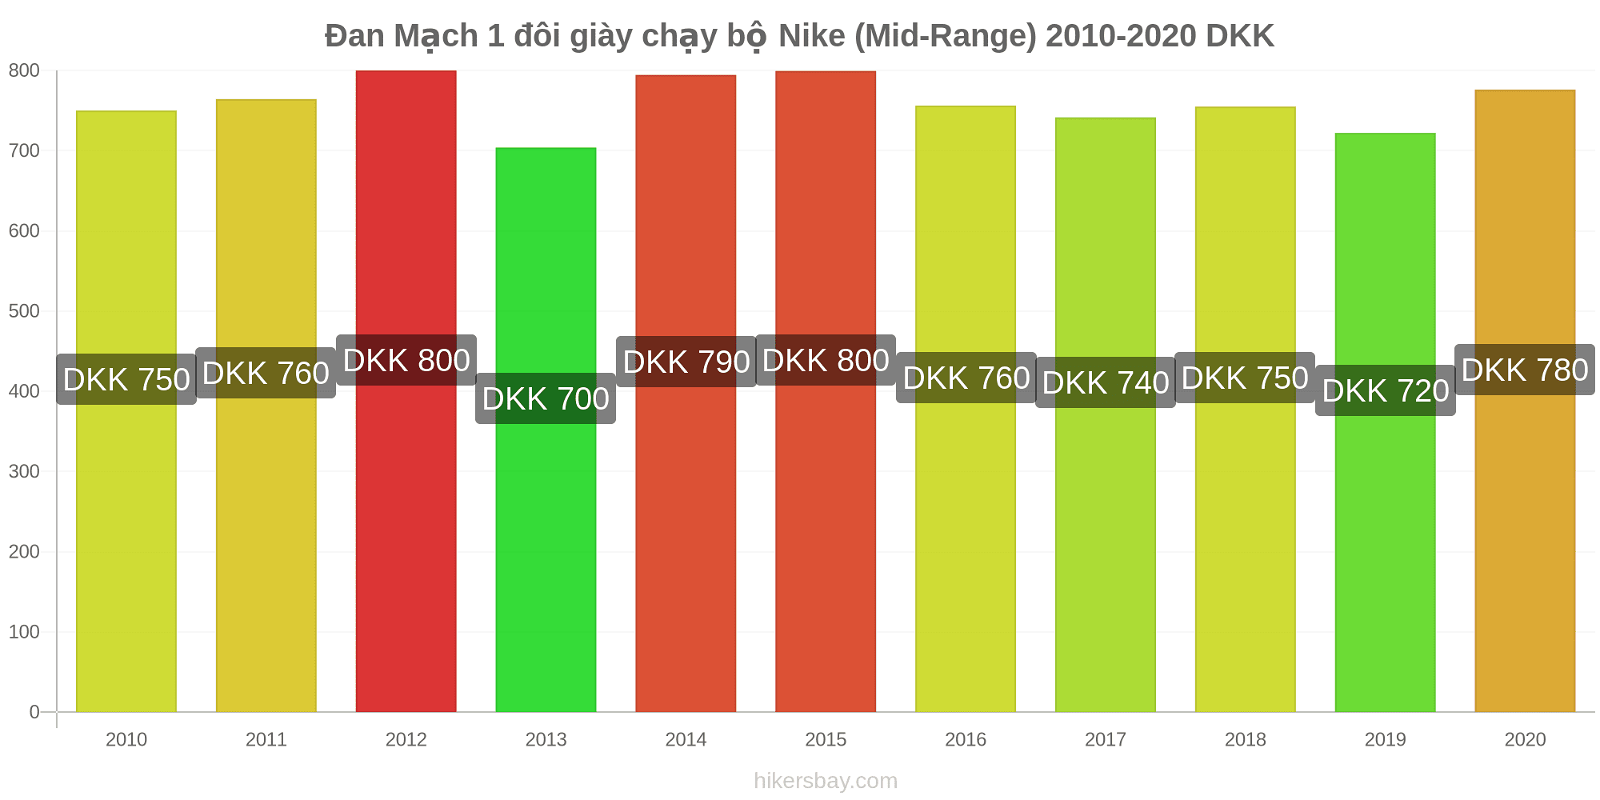 Đan Mạch thay đổi giá 1 đôi giày chạy bộ Nike (Mid-Range) hikersbay.com